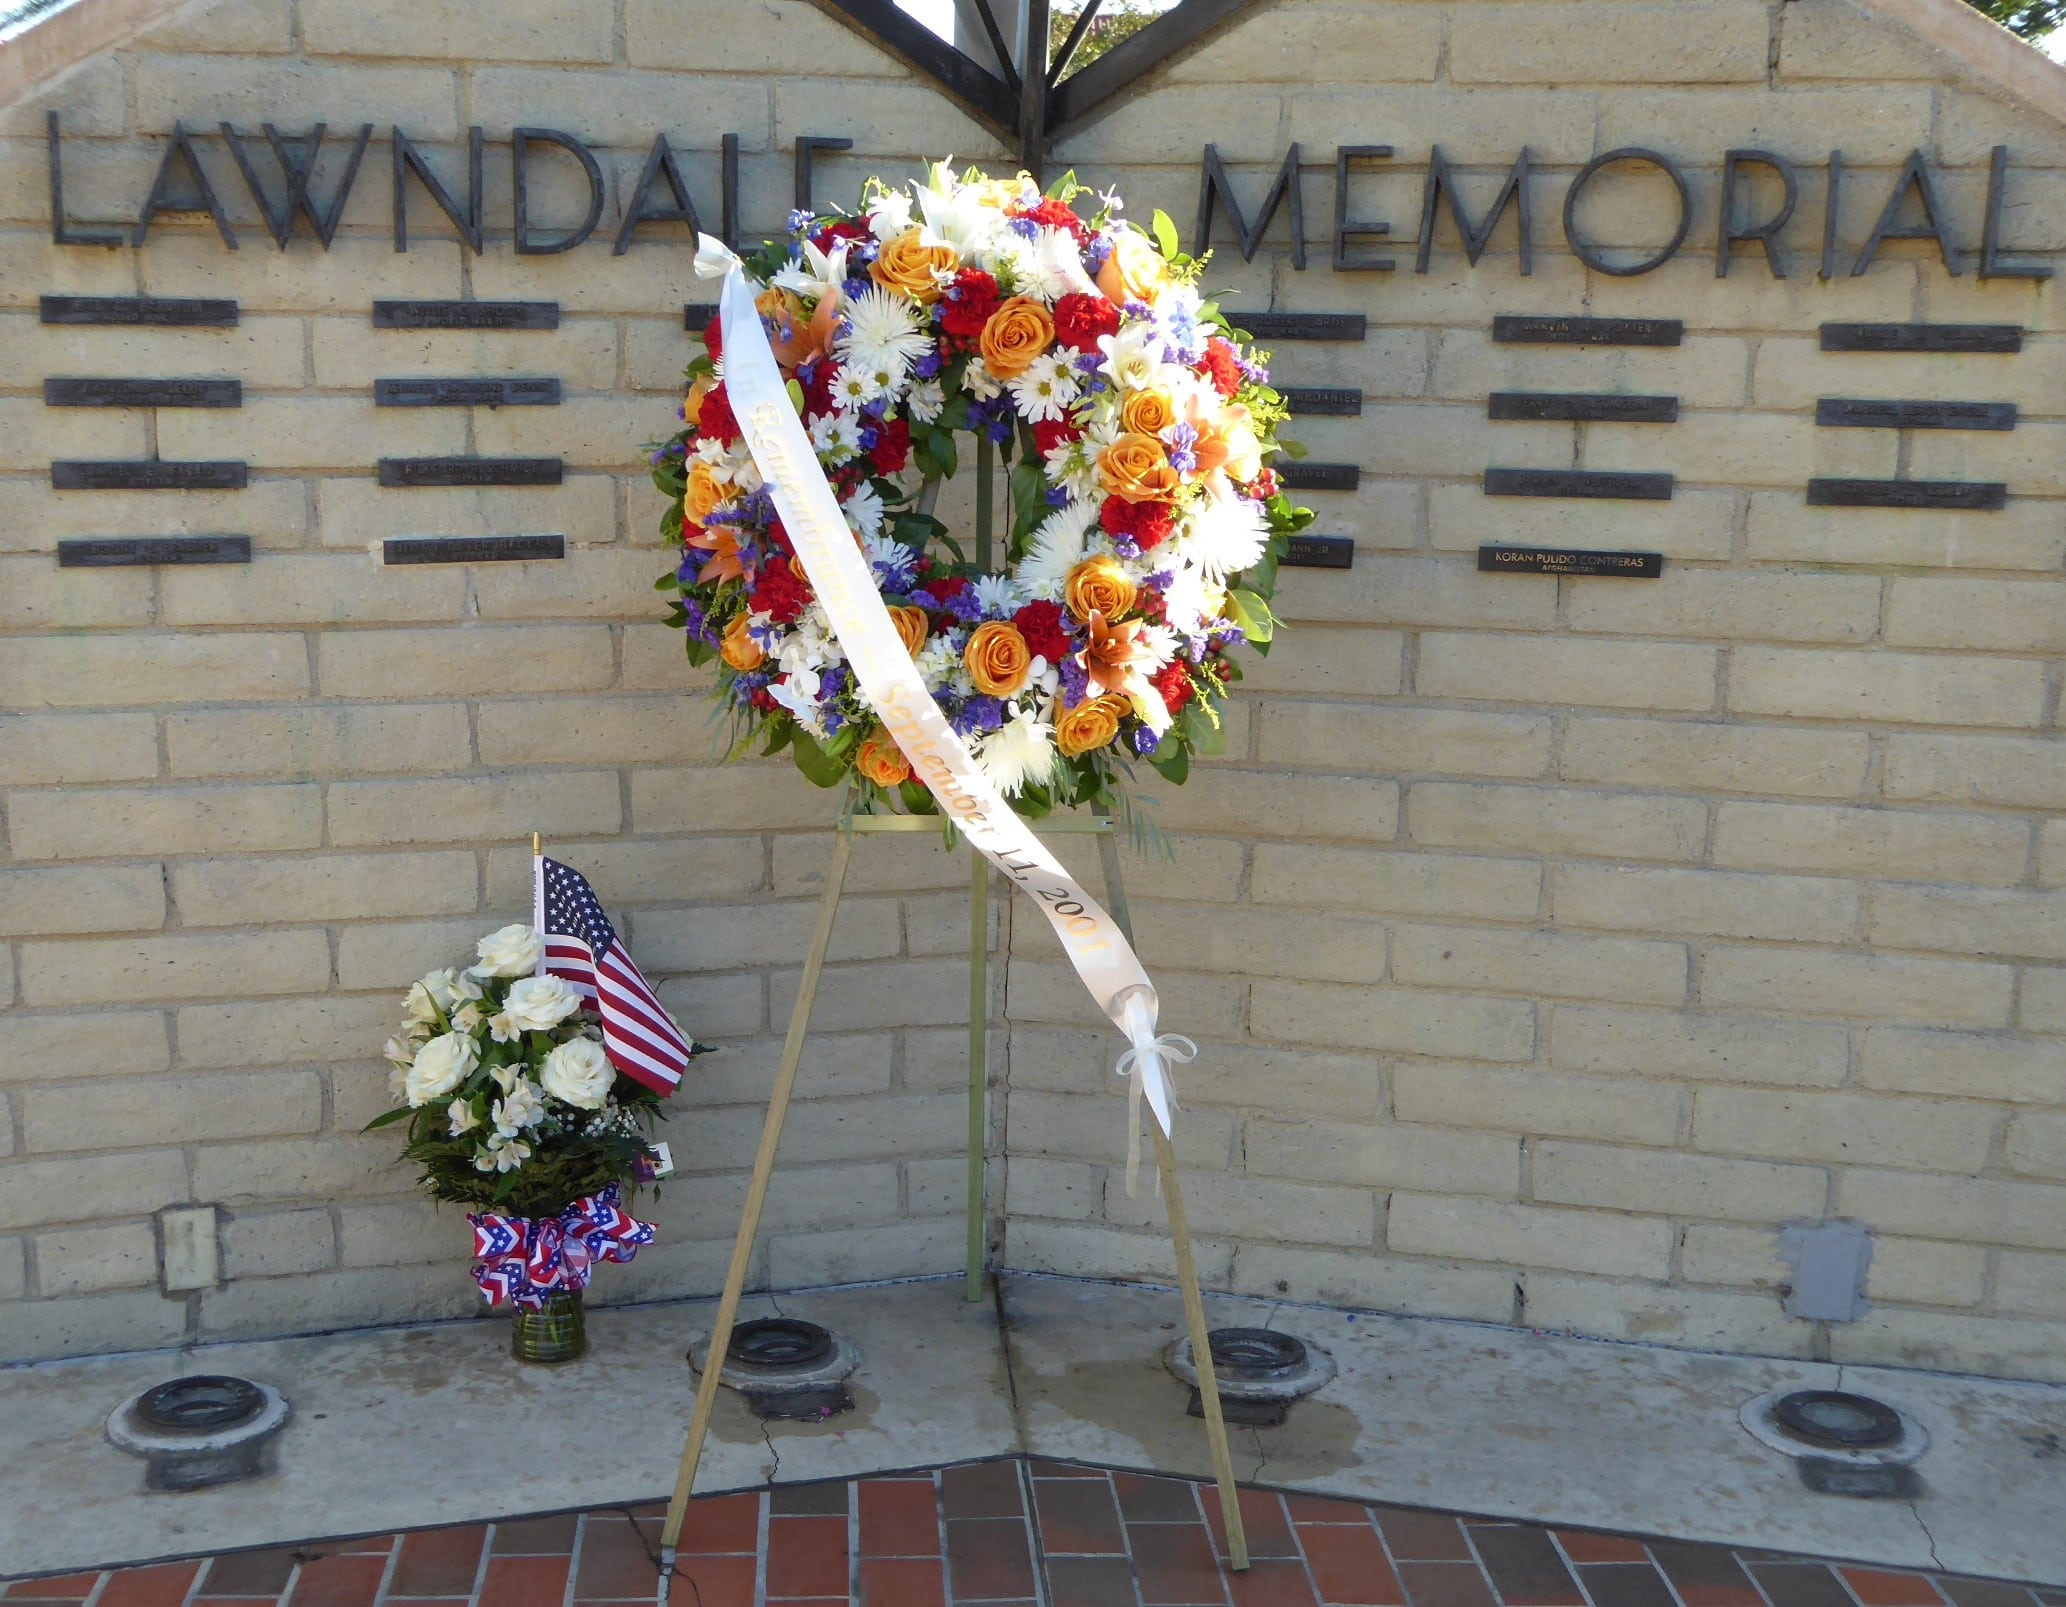 Lawndale Memorial